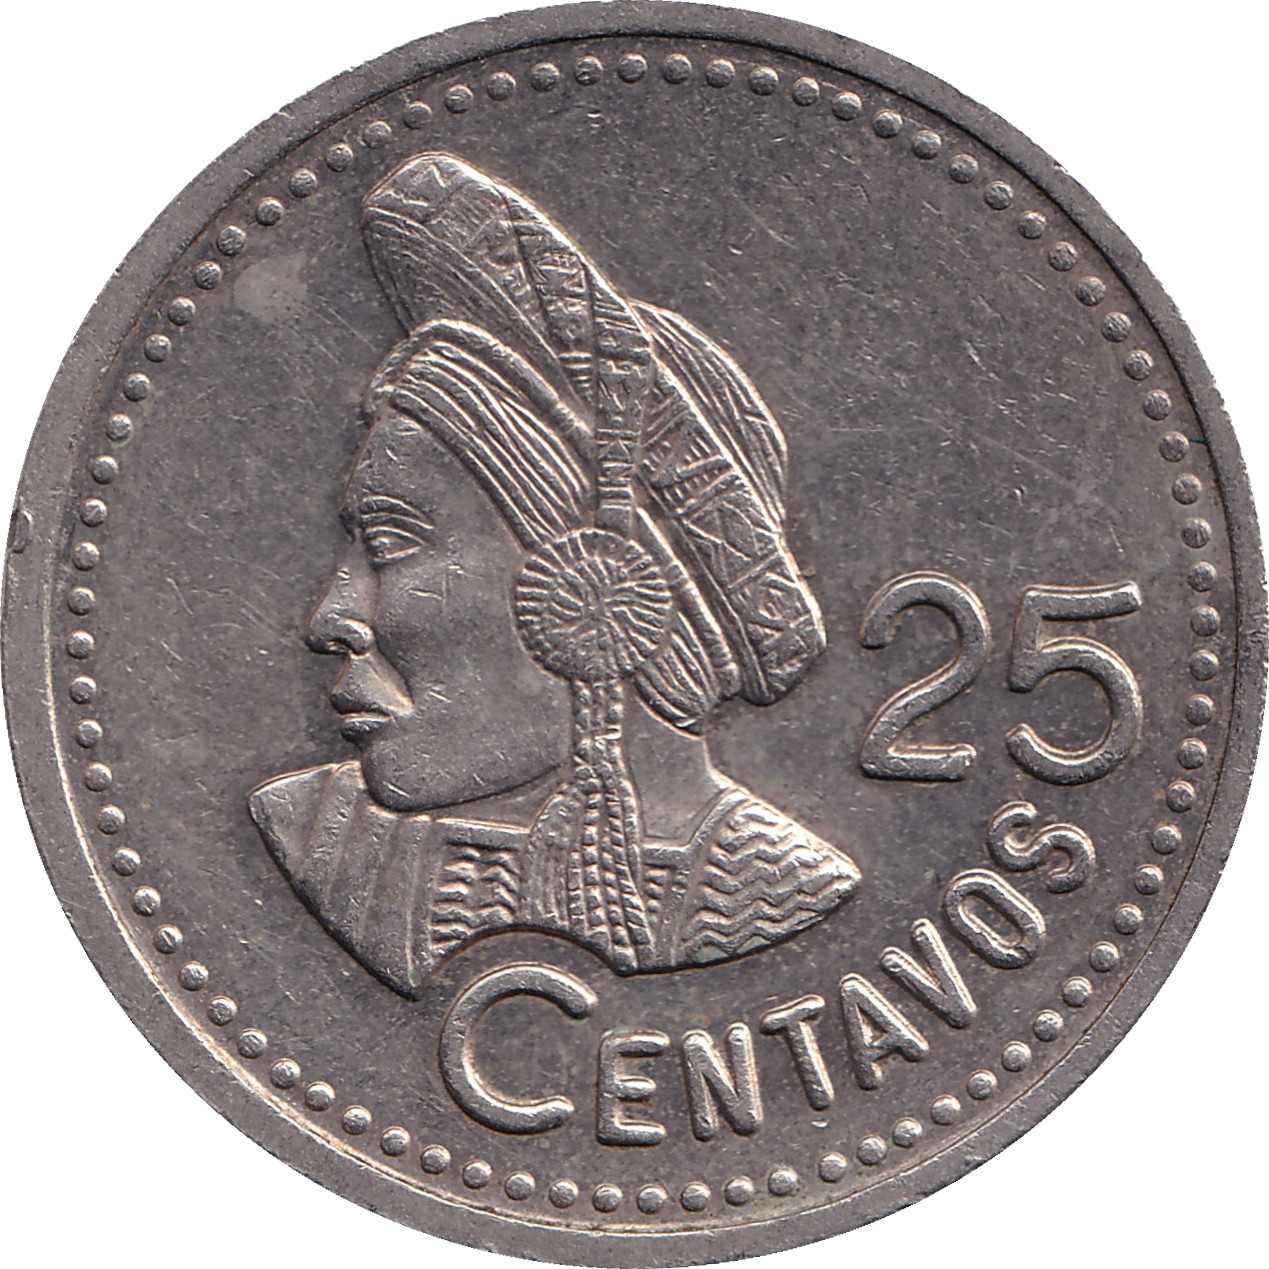 25 centimos - Emblème - Amérindien